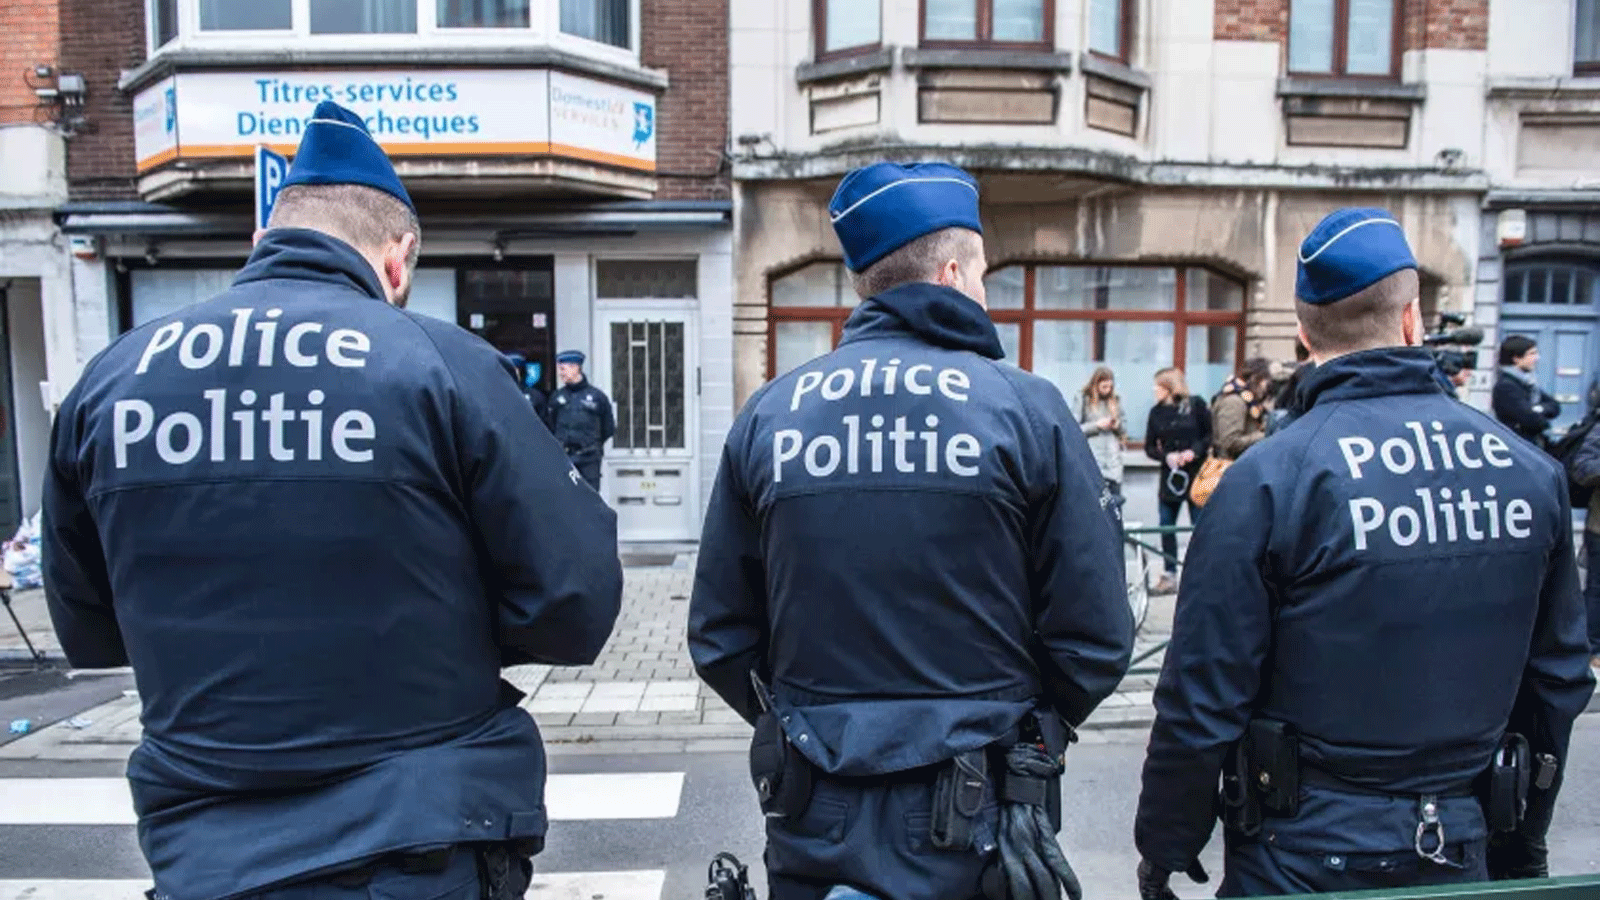 ضباط شرطة يقفون في حراسة منطقة شيربيك في بروكسل خلال عملية لمكافحة الإرهاب